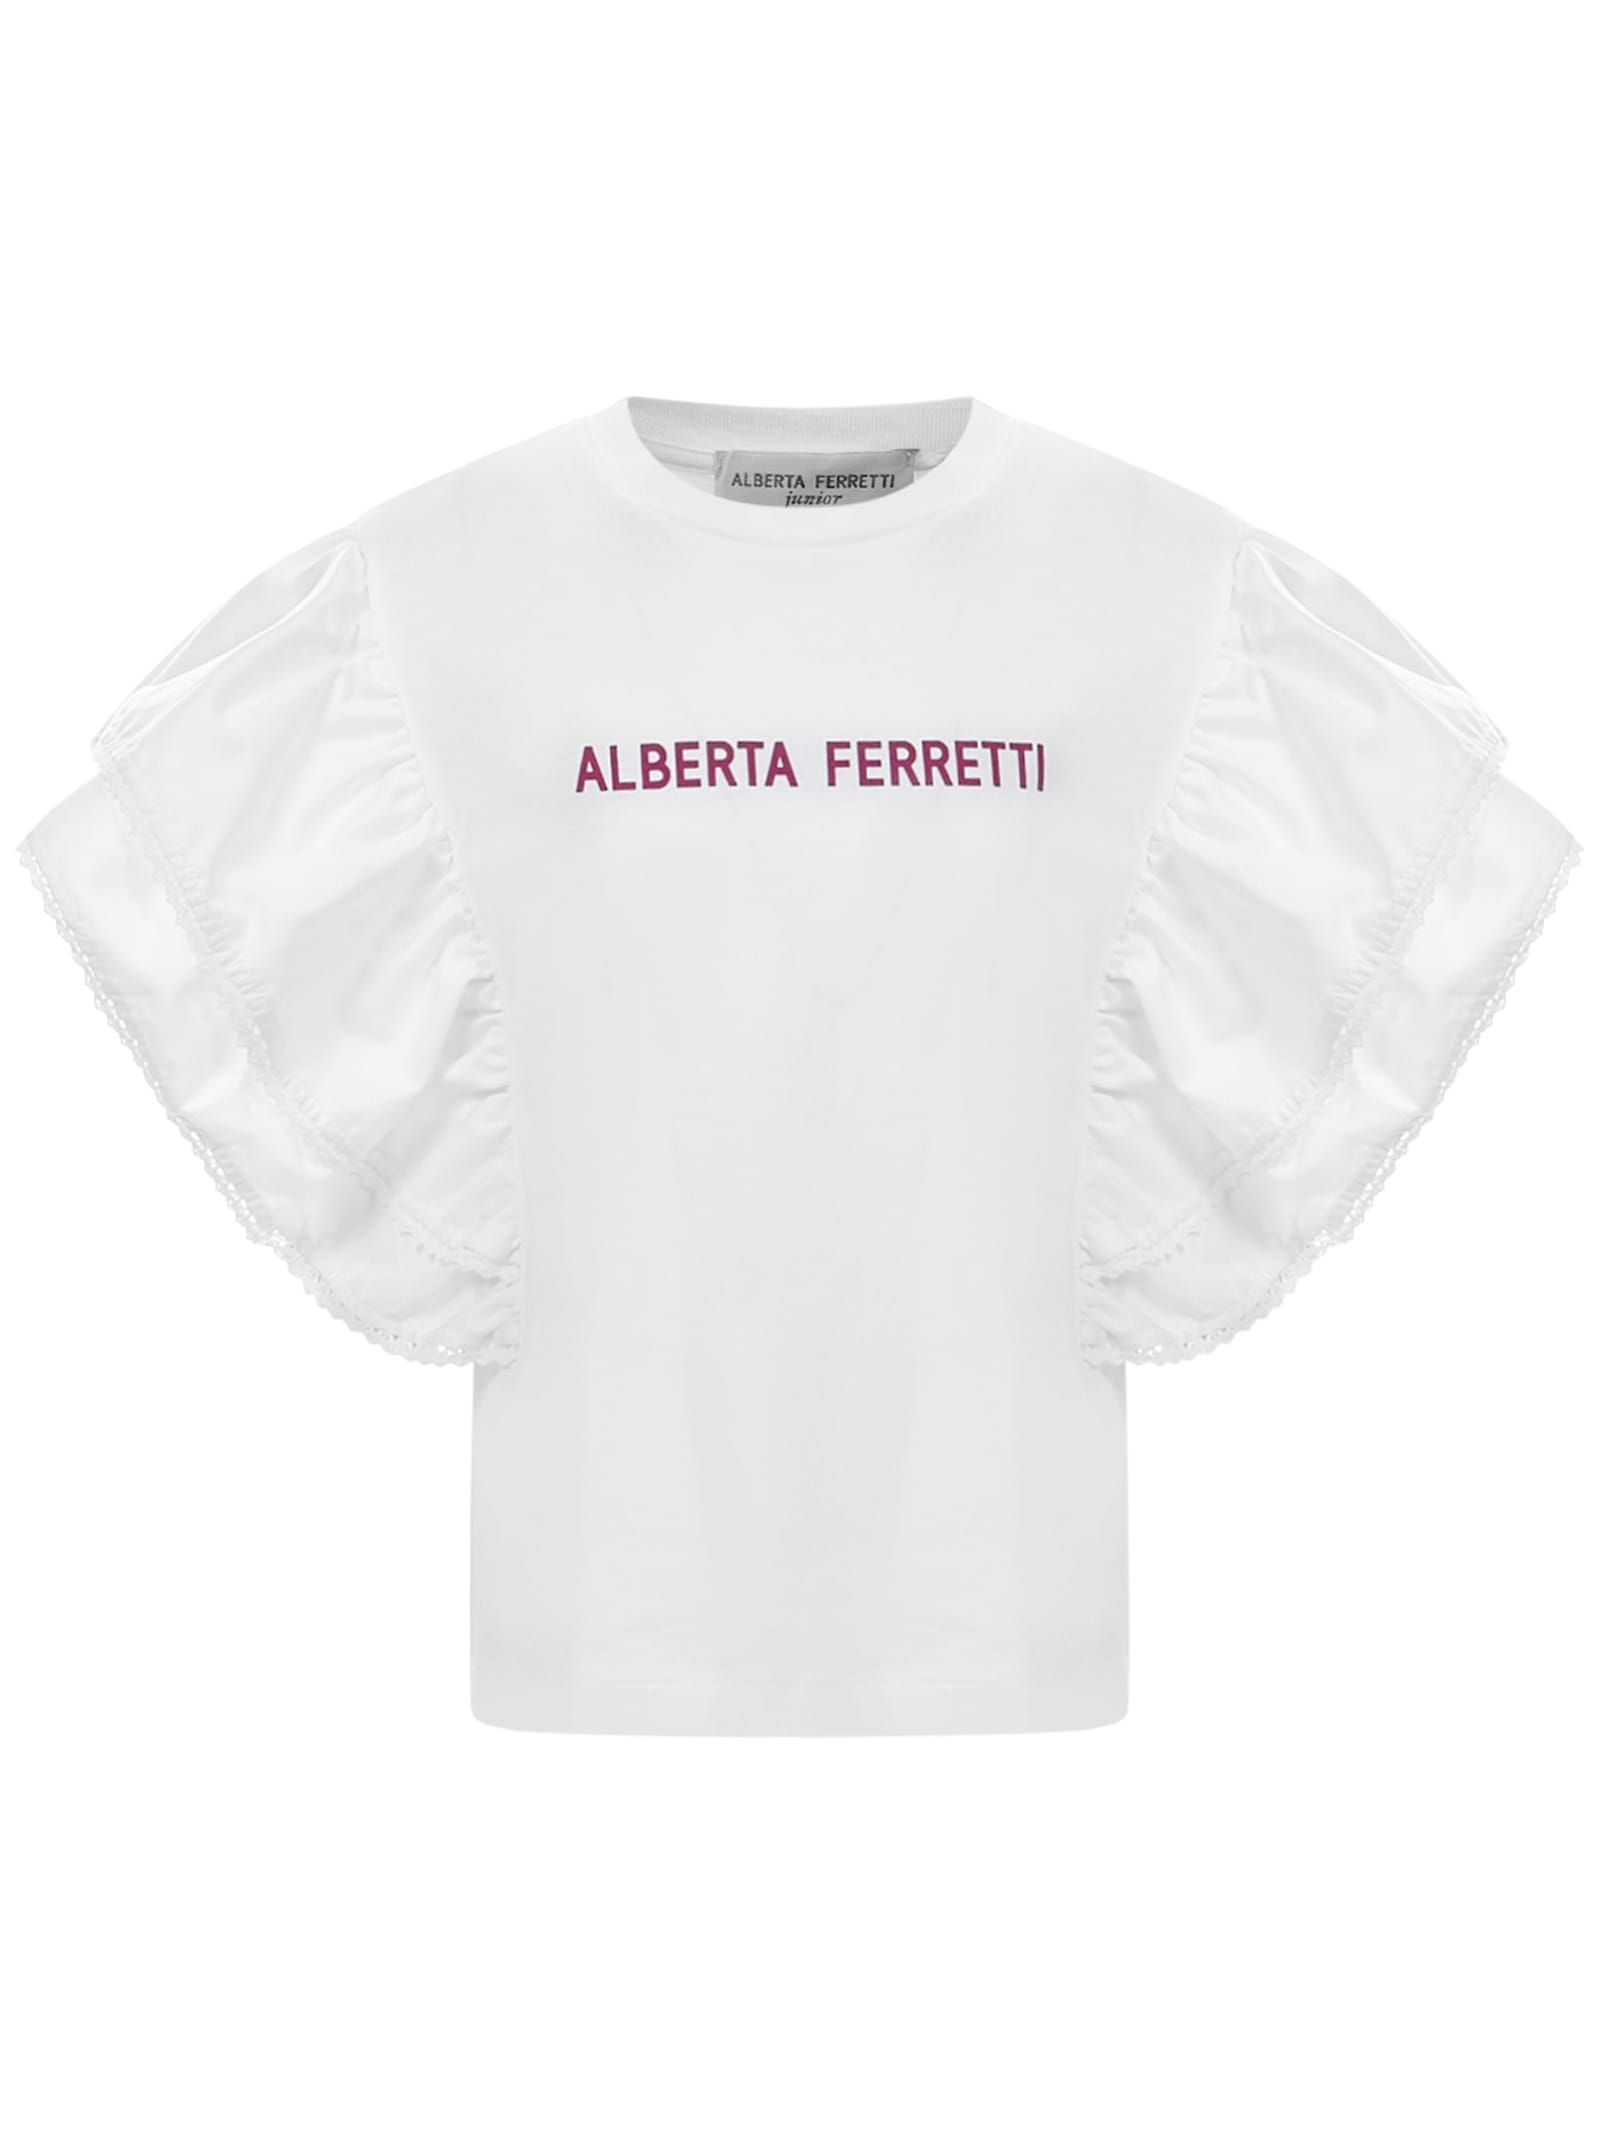 ALBERTA FERRETTI JUNIOR T-SHIRT,027815 002